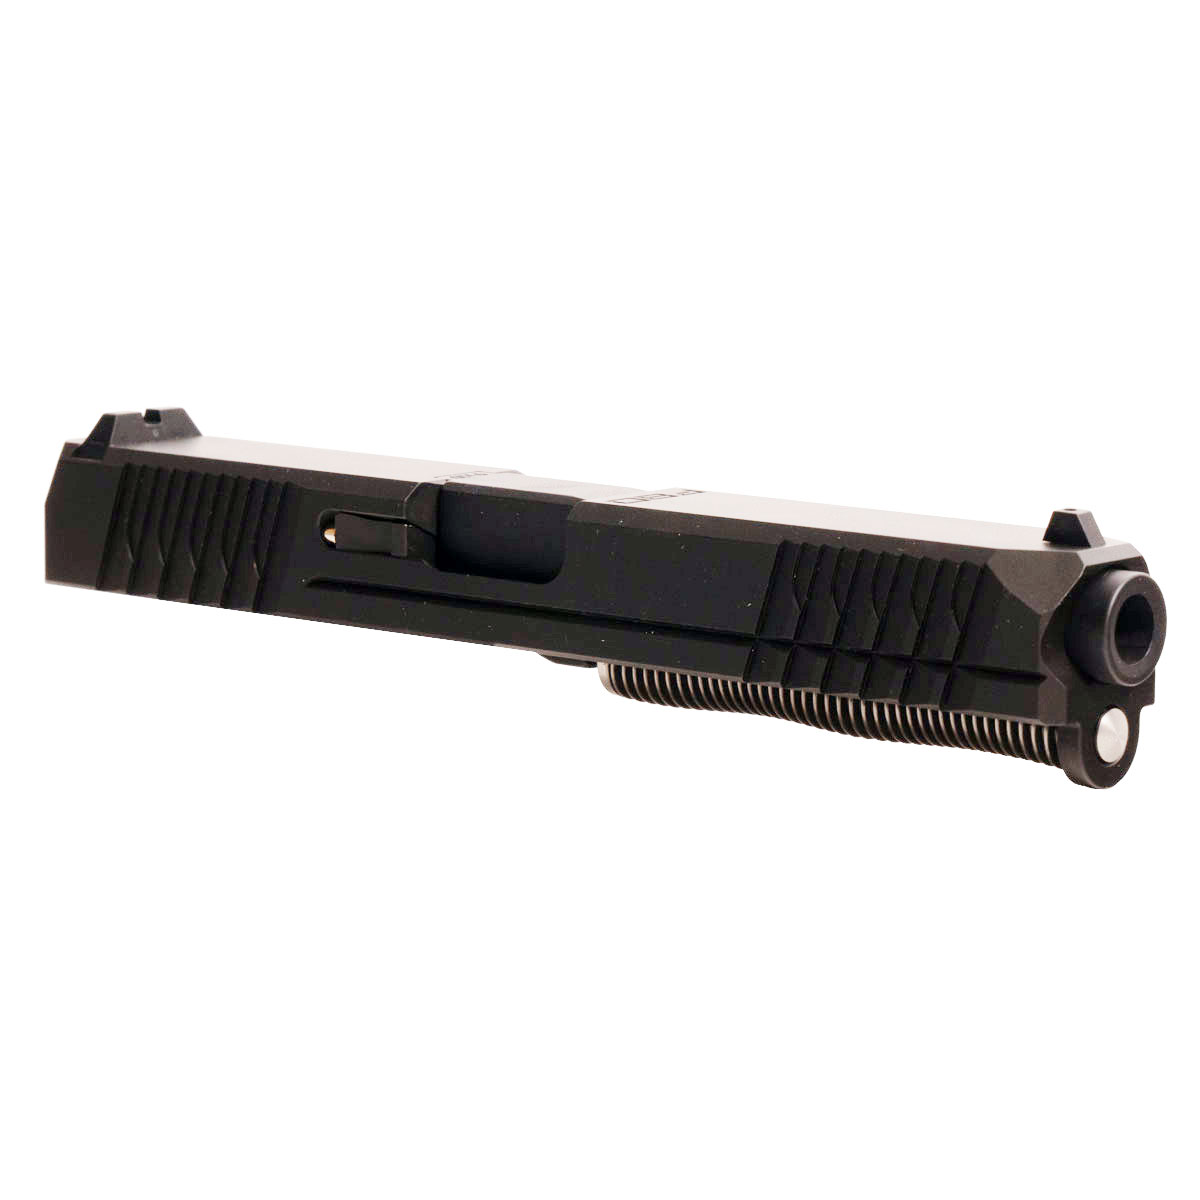 MMC 'Eidolon Ally' 9mm Complete Slide Kit - Glock 17 Gen 1-3 Compatible